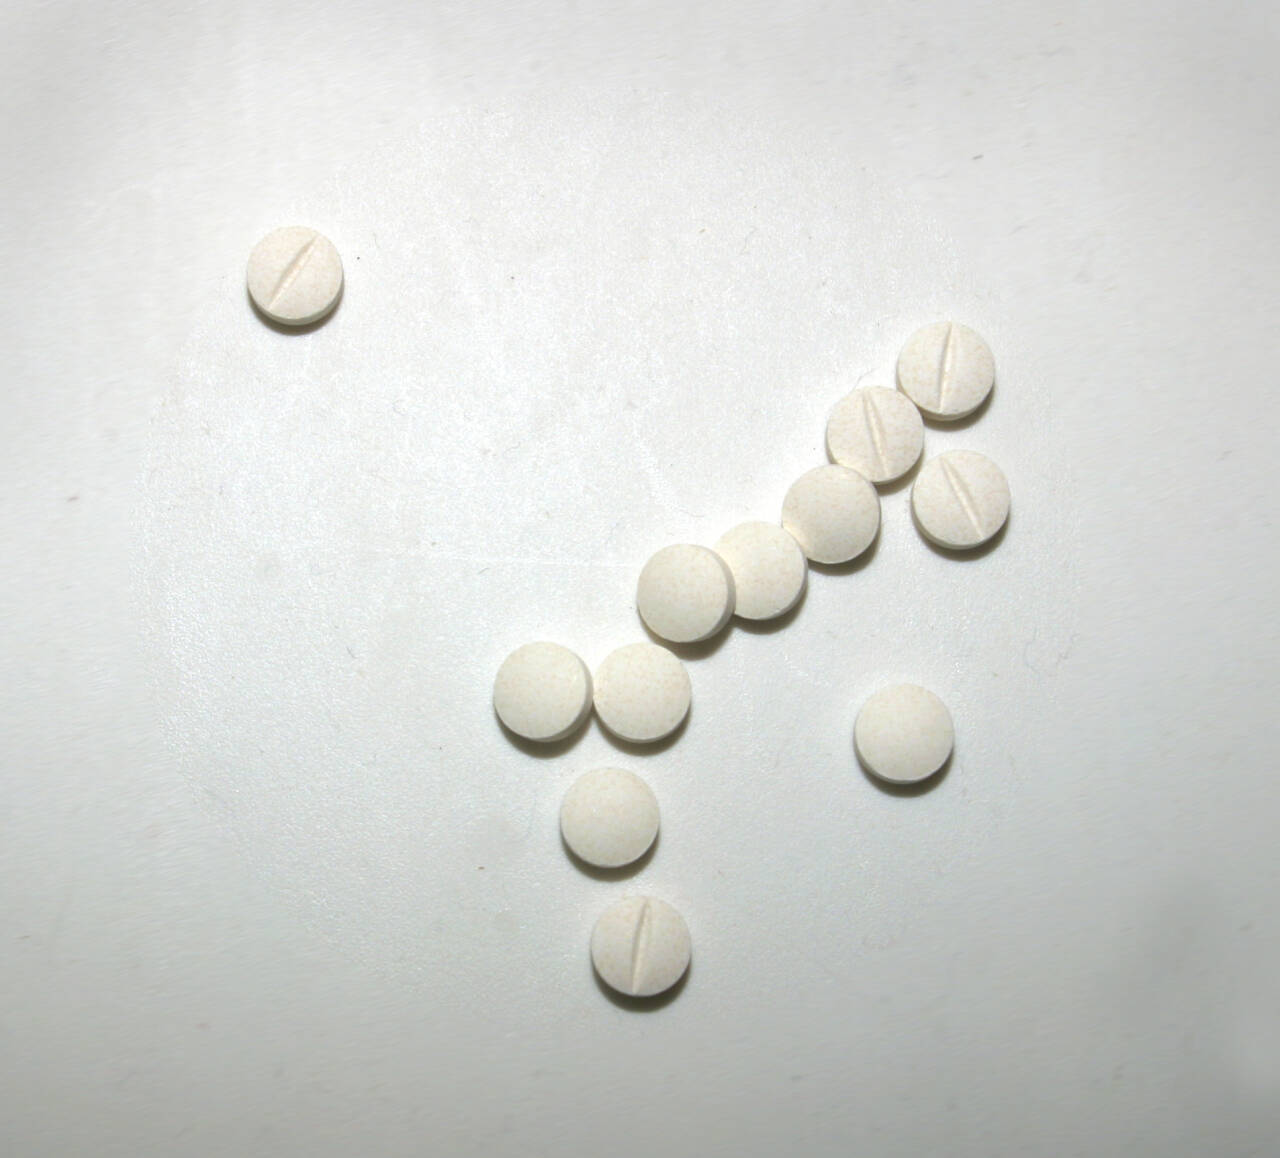 Antall pasienter som fikk minst ett opioid på blå resept økt fra 5.568 til 17.383 fra 2008 til 2018. Foto: NTB